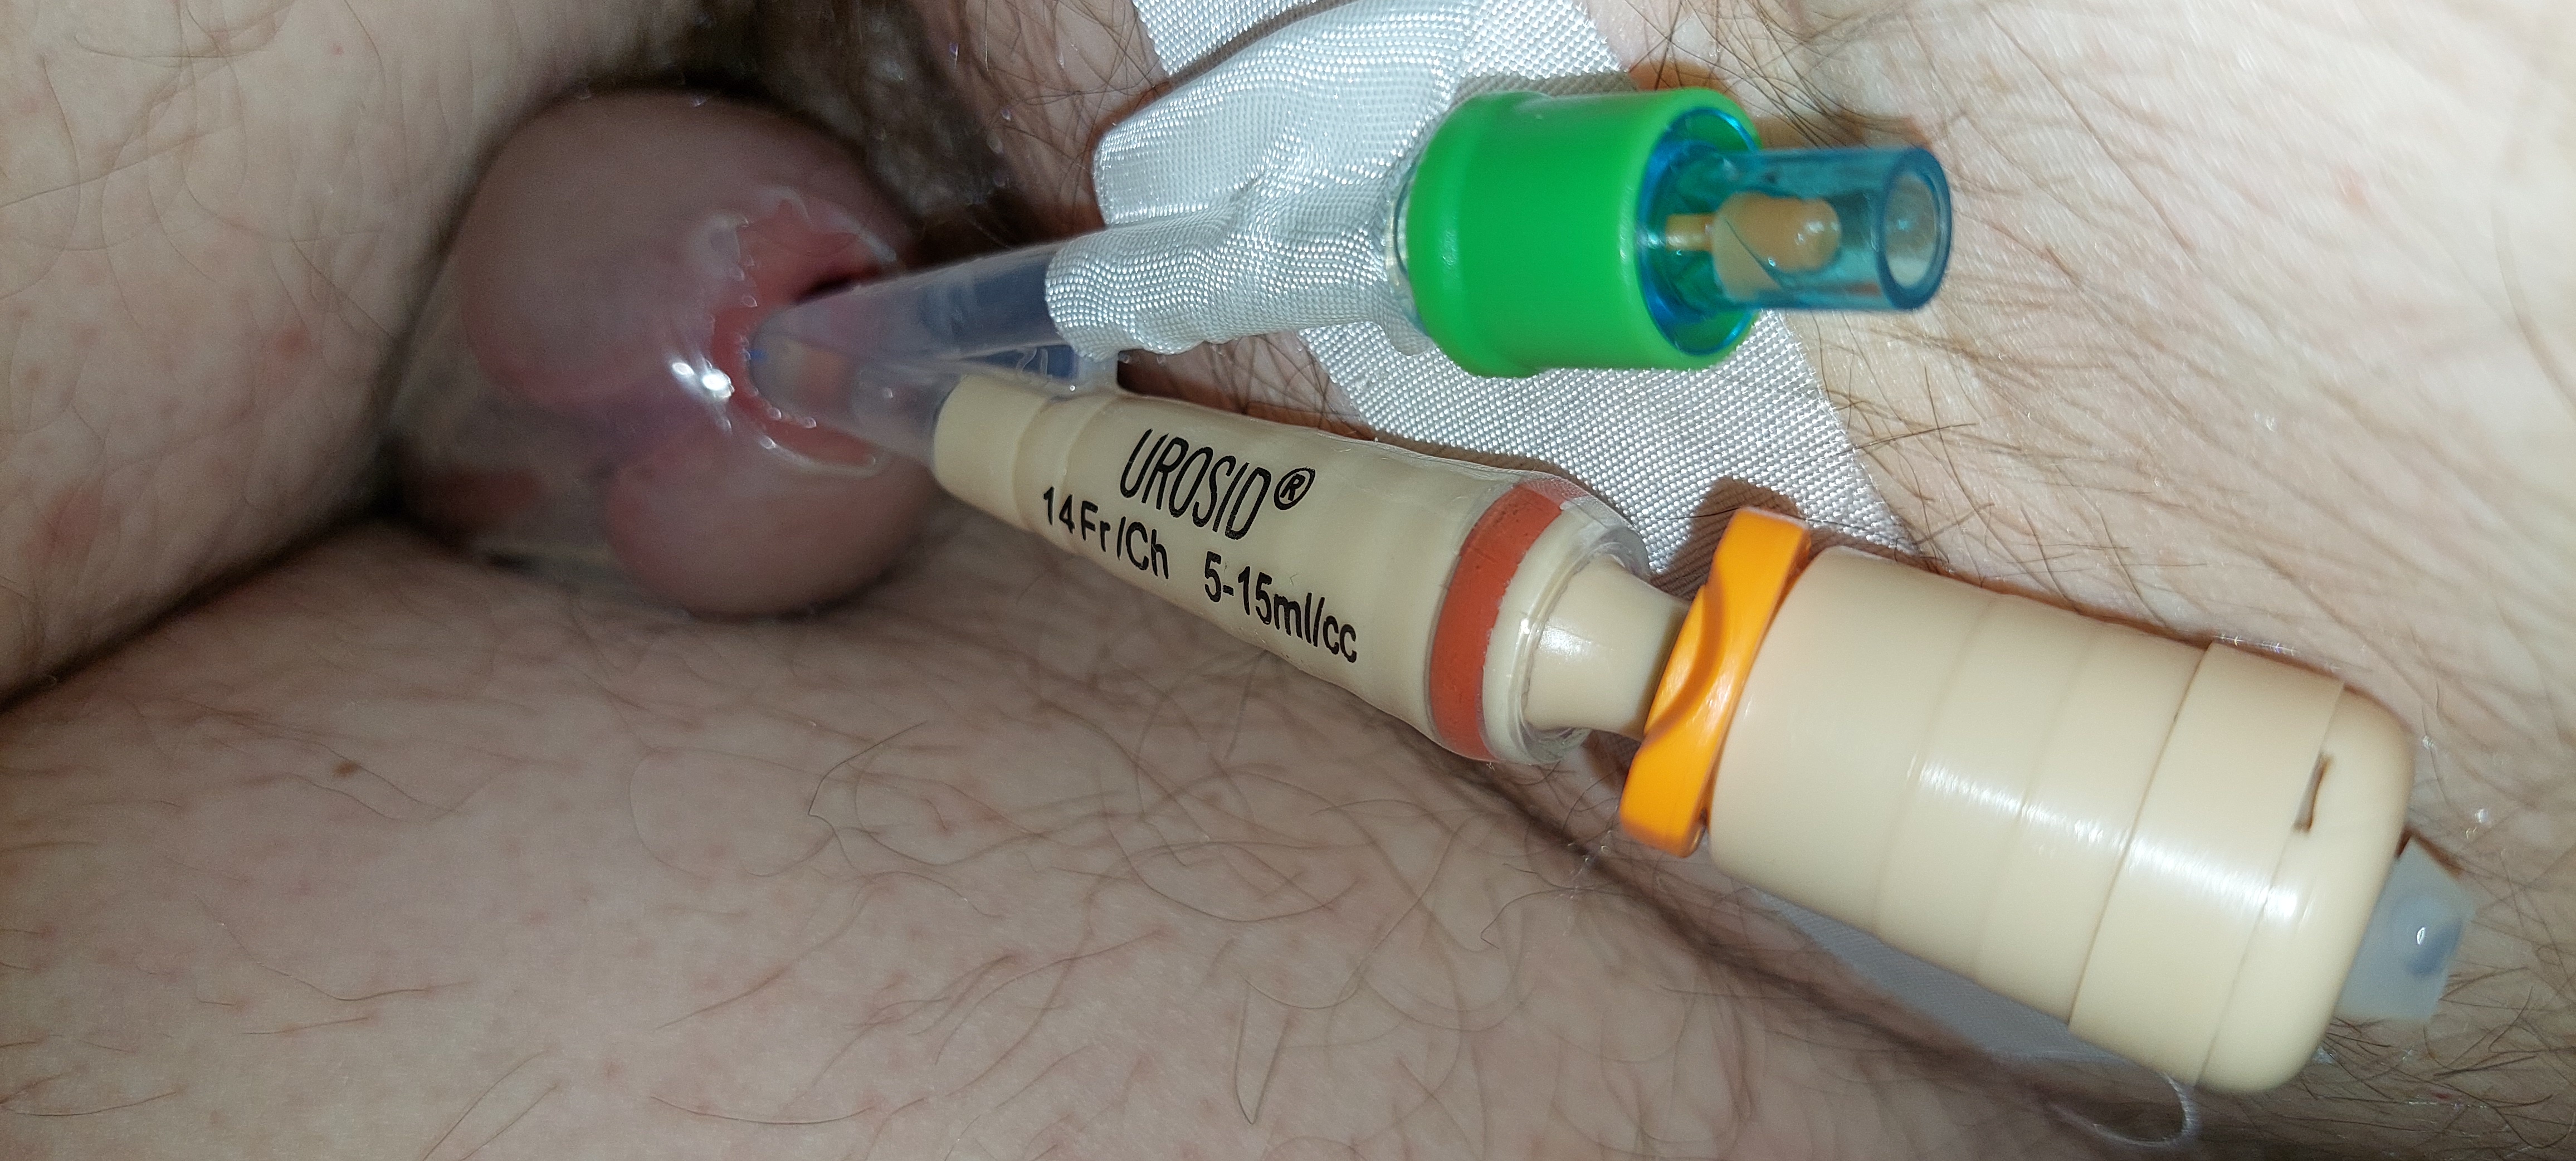 Foley catheter orgasm day 3